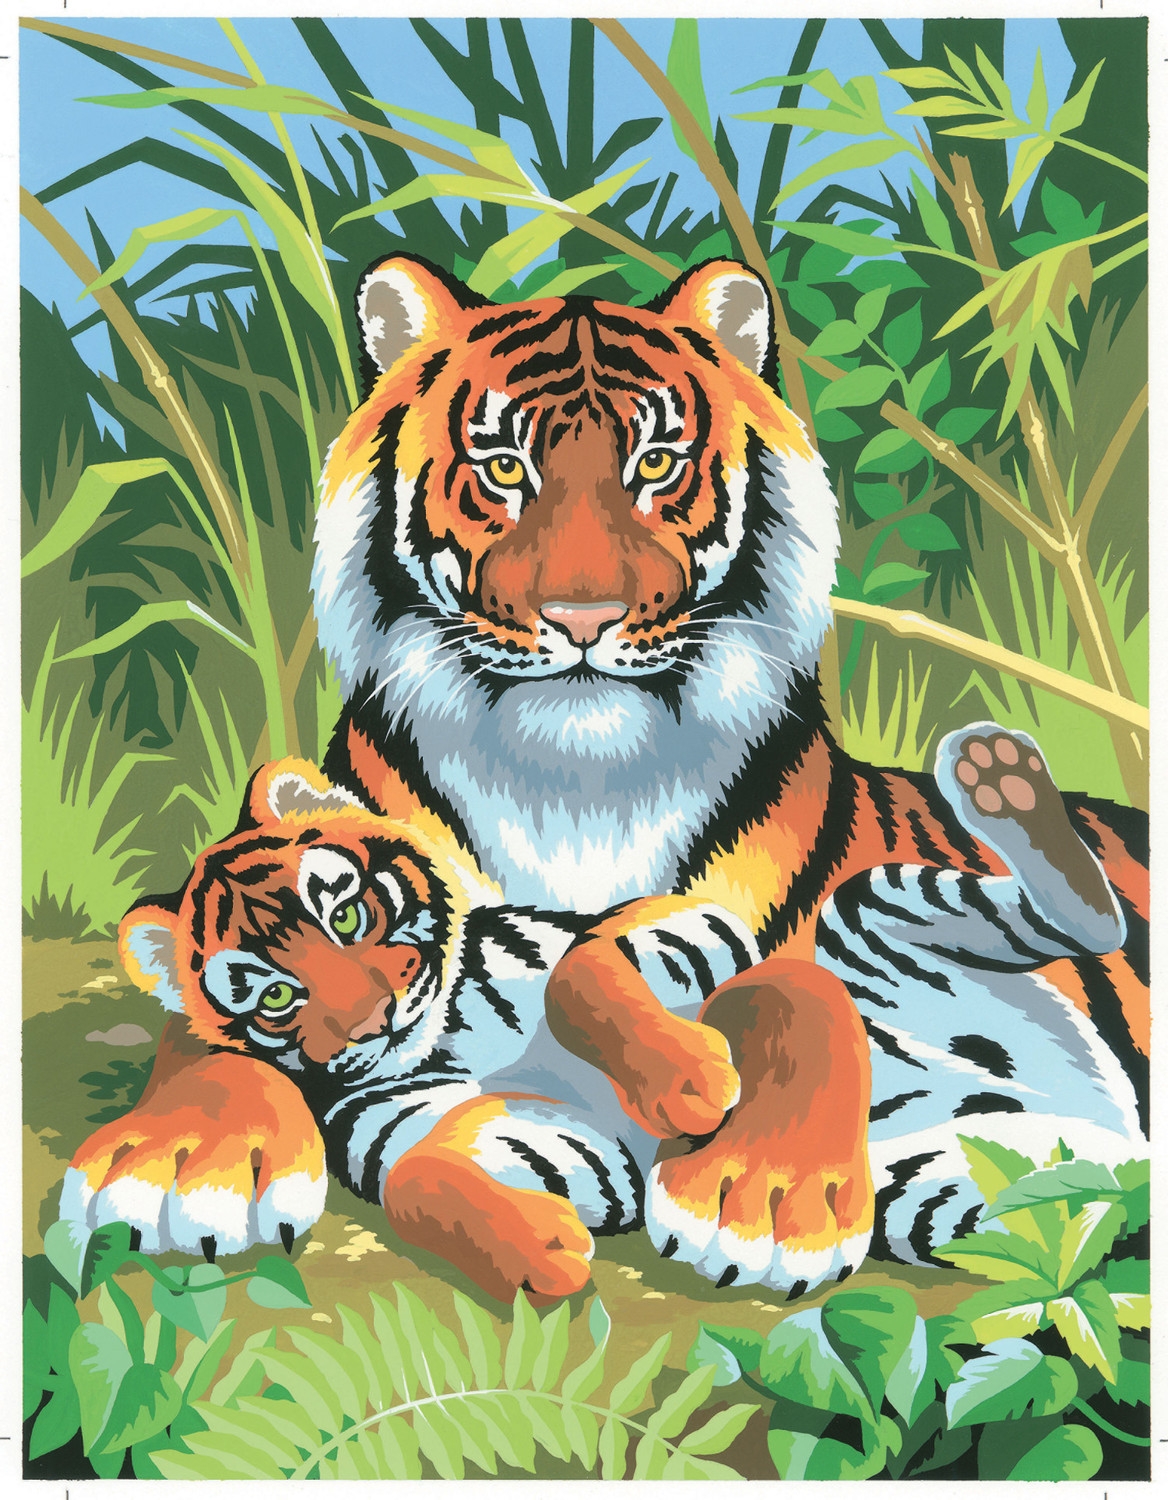 Tableau peinture au numéro Pour enfant Tigres - KSG référence PBNJ2